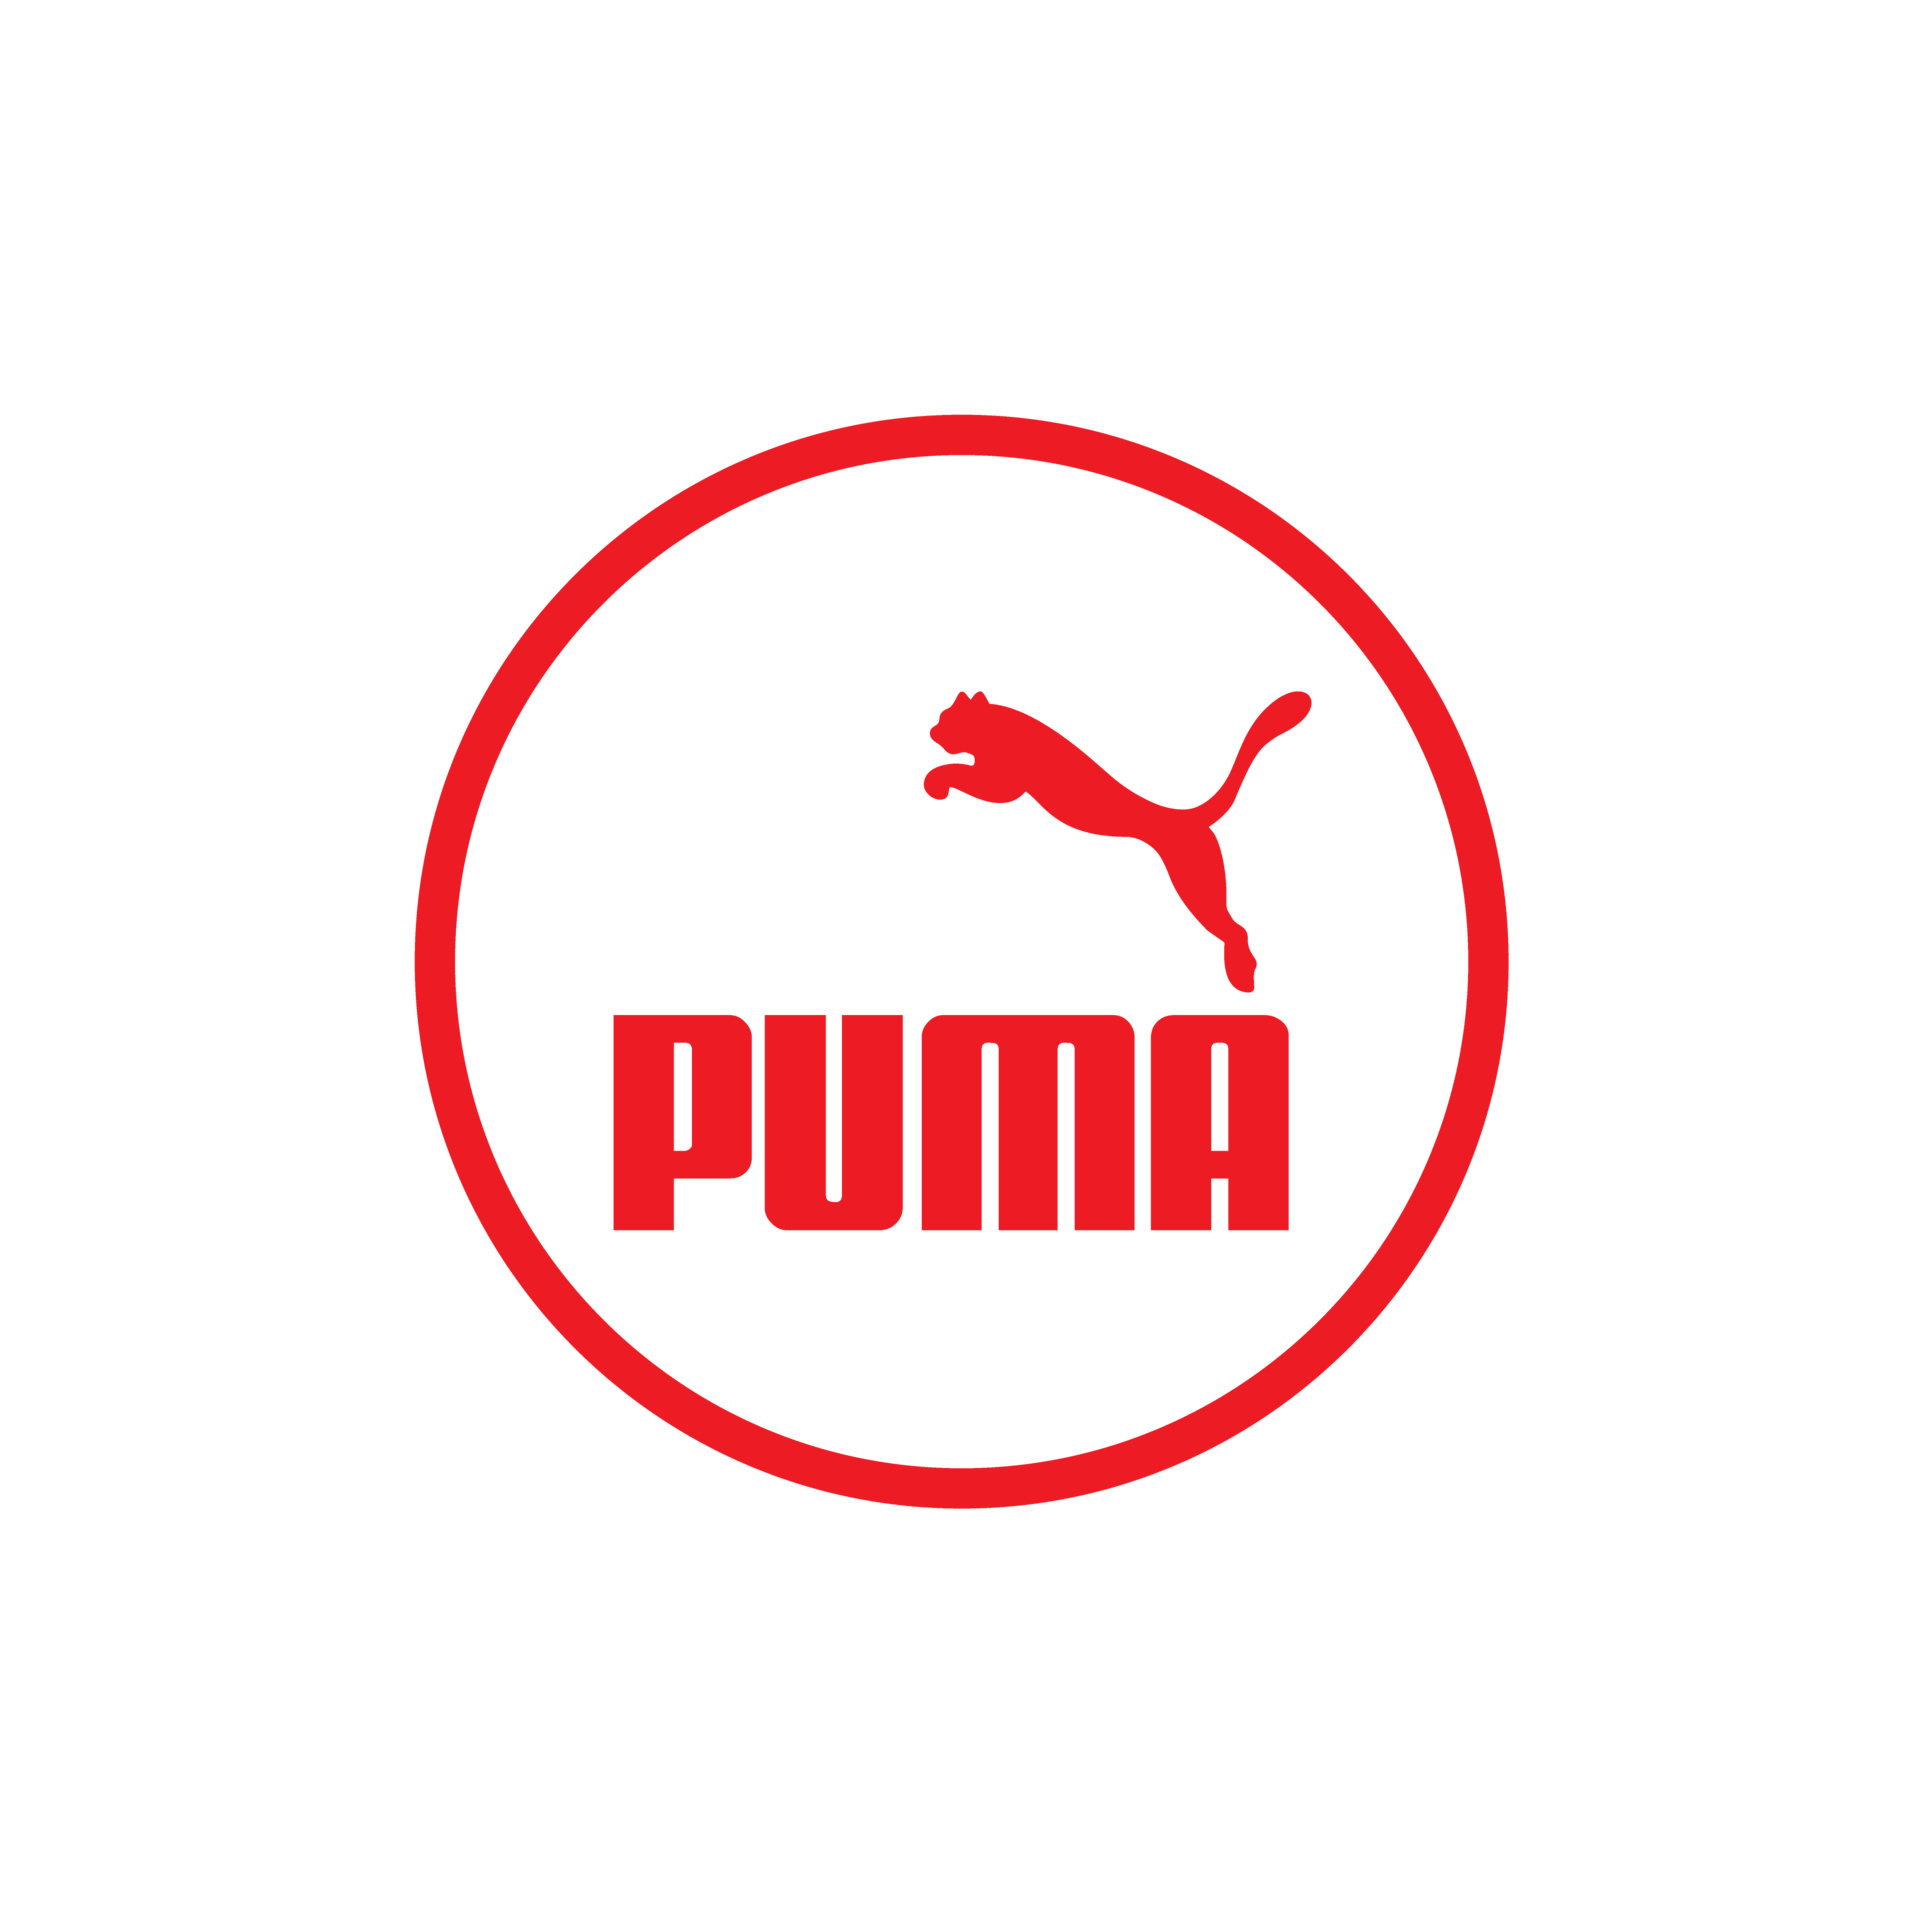 Transparent Puma Logo - Transparent Background Puma Logo Png,Puma Png -  free transparent png images - pngaaa.com